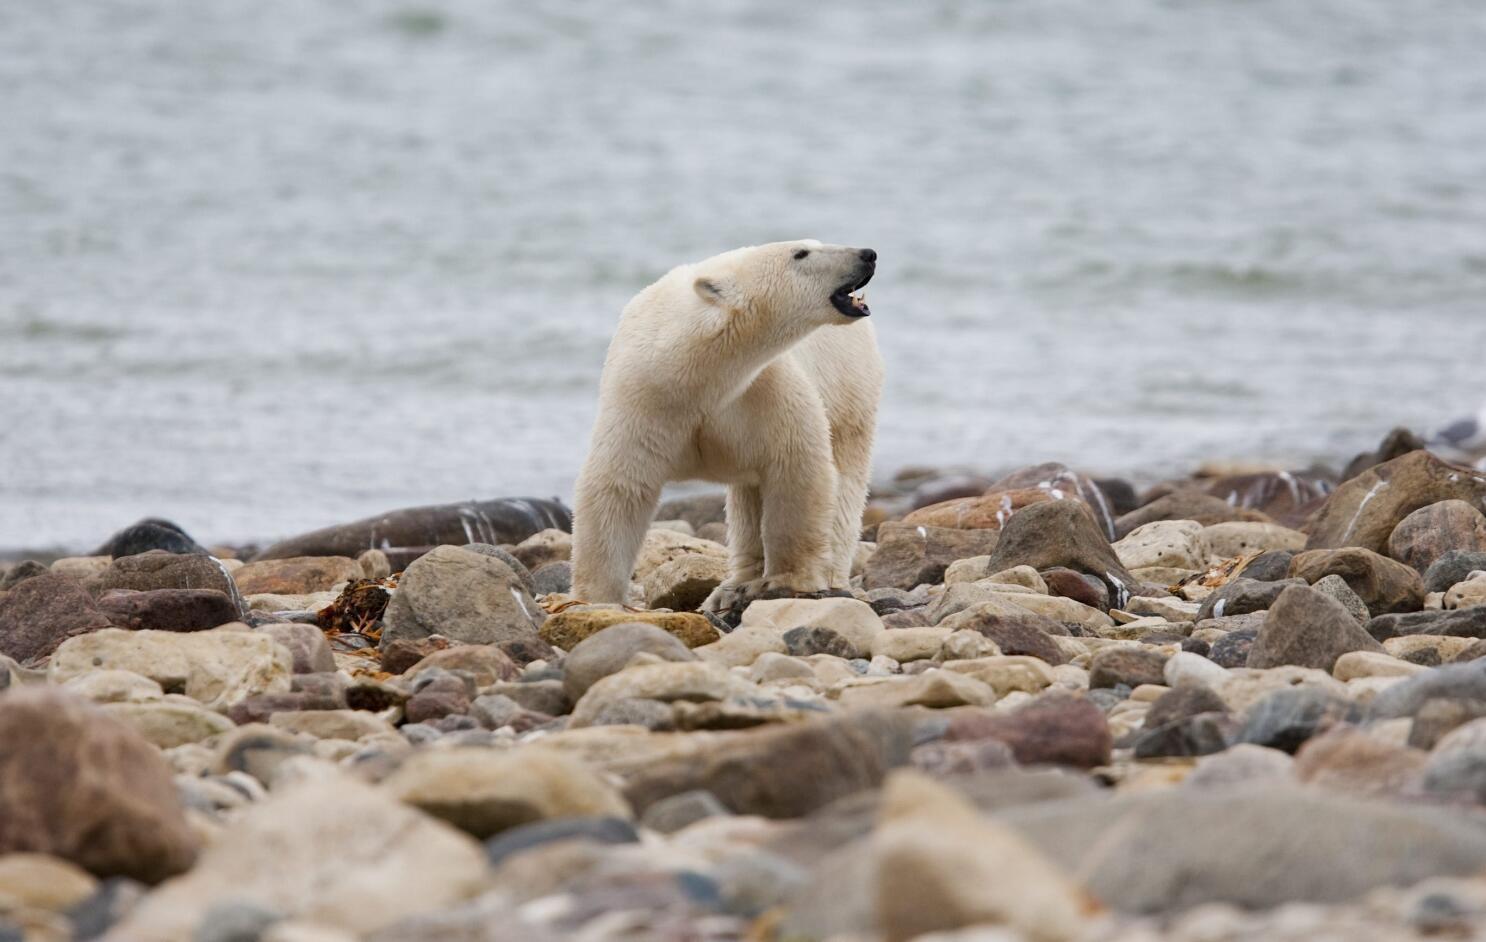 Osos polares del norte de Canadá mueren a ritmo acelerado - San Diego  Union-Tribune en Español